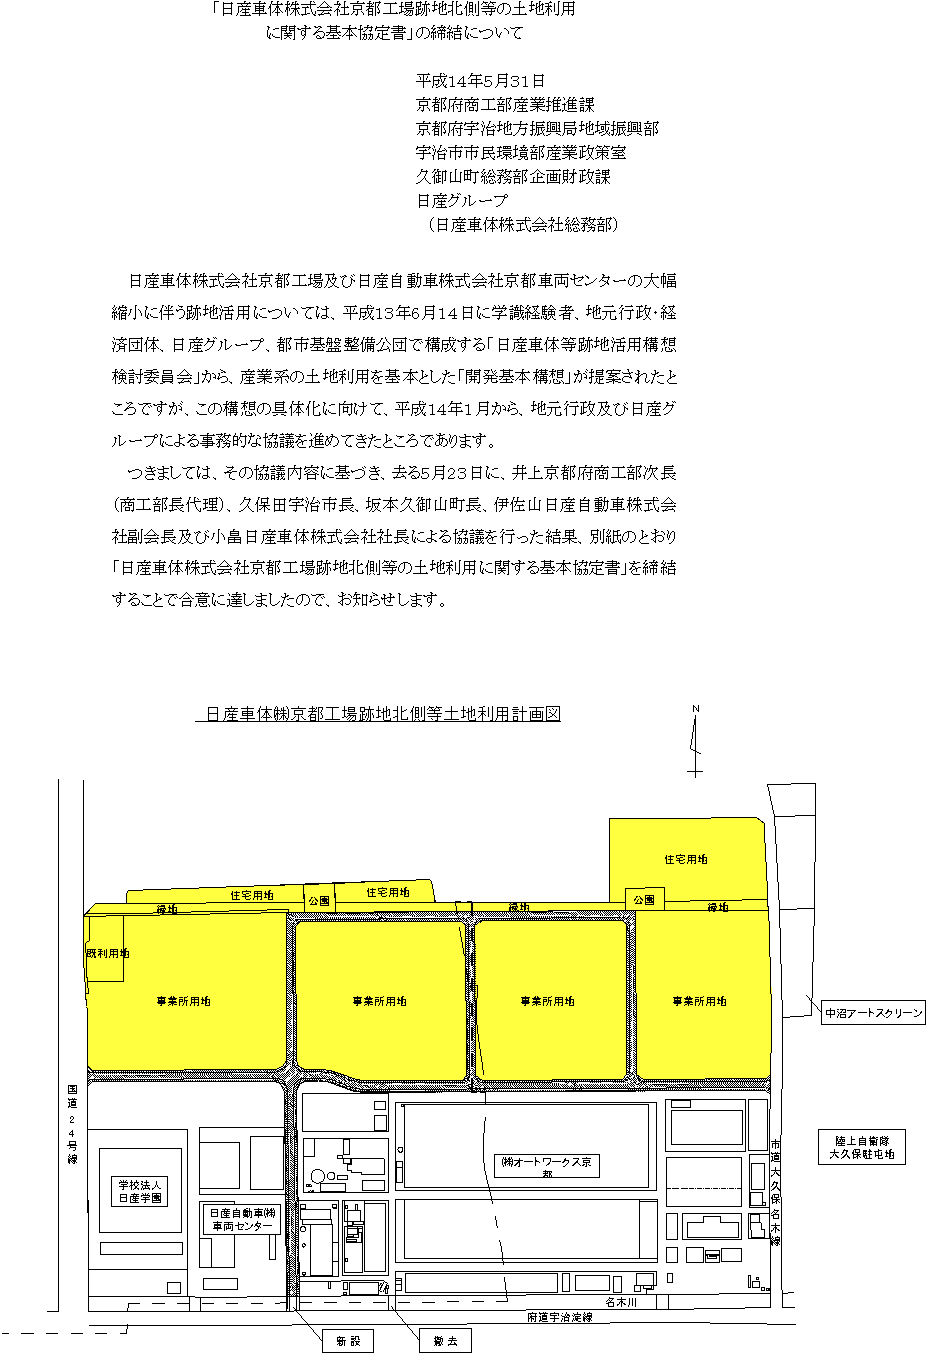 京都工場跡地等の土地利用に関する基本協定書